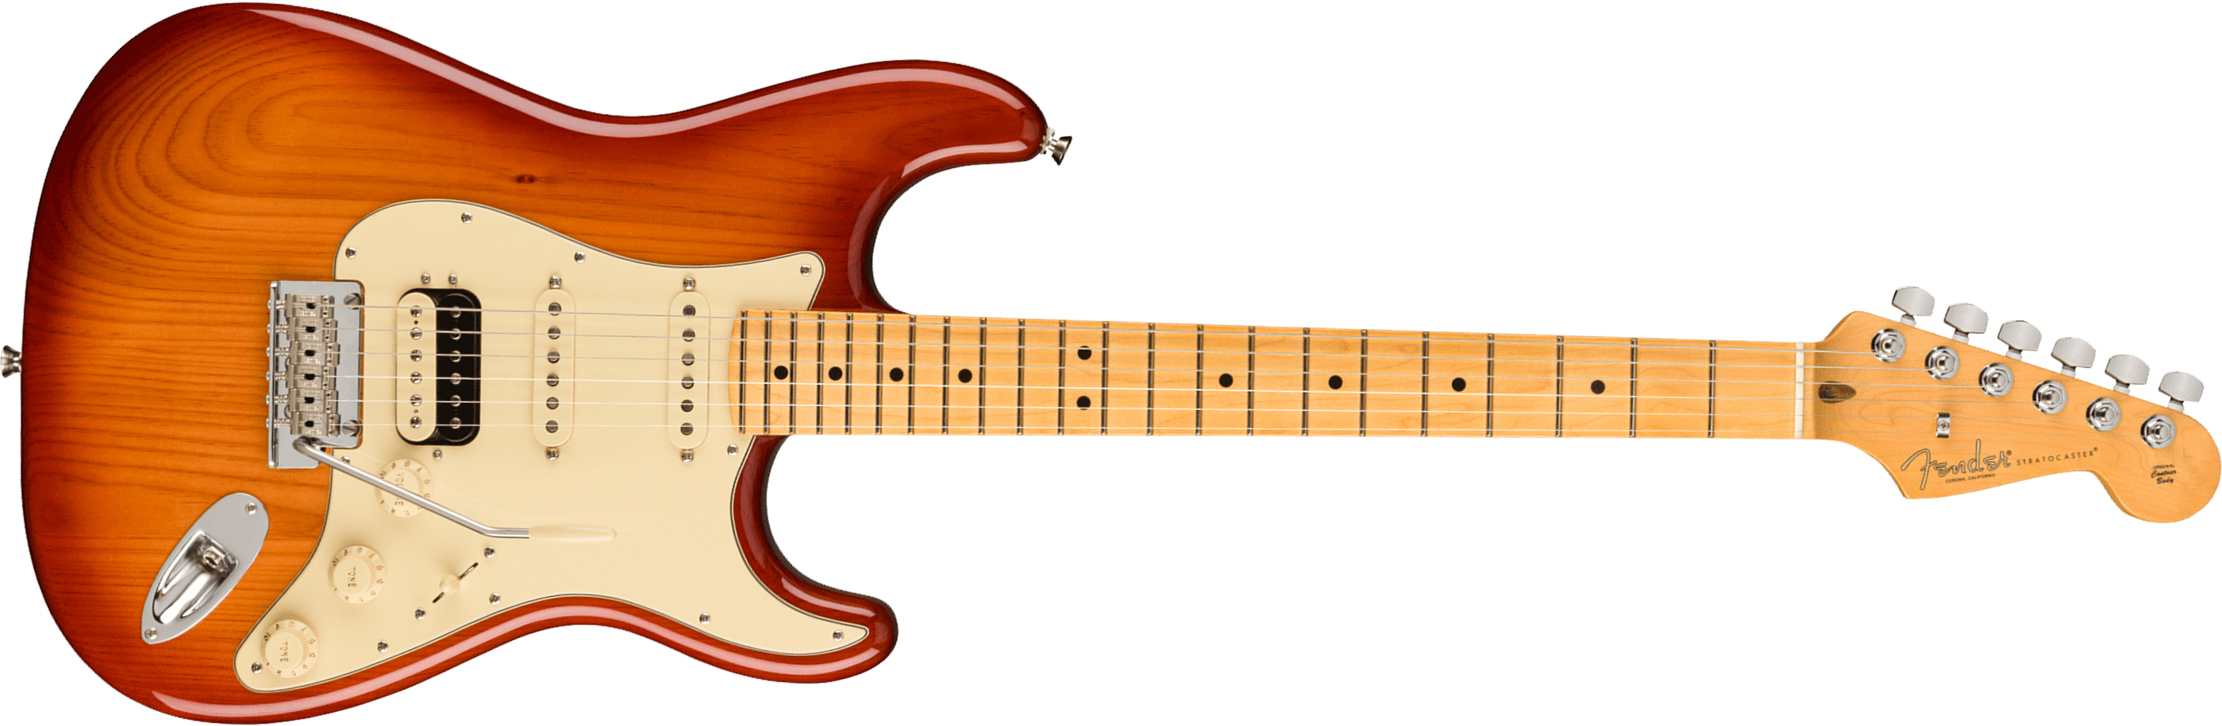 Fender Strat American Professional Ii Hss Usa Mn - Sienna Sunburst - Elektrische gitaar in Str-vorm - Main picture